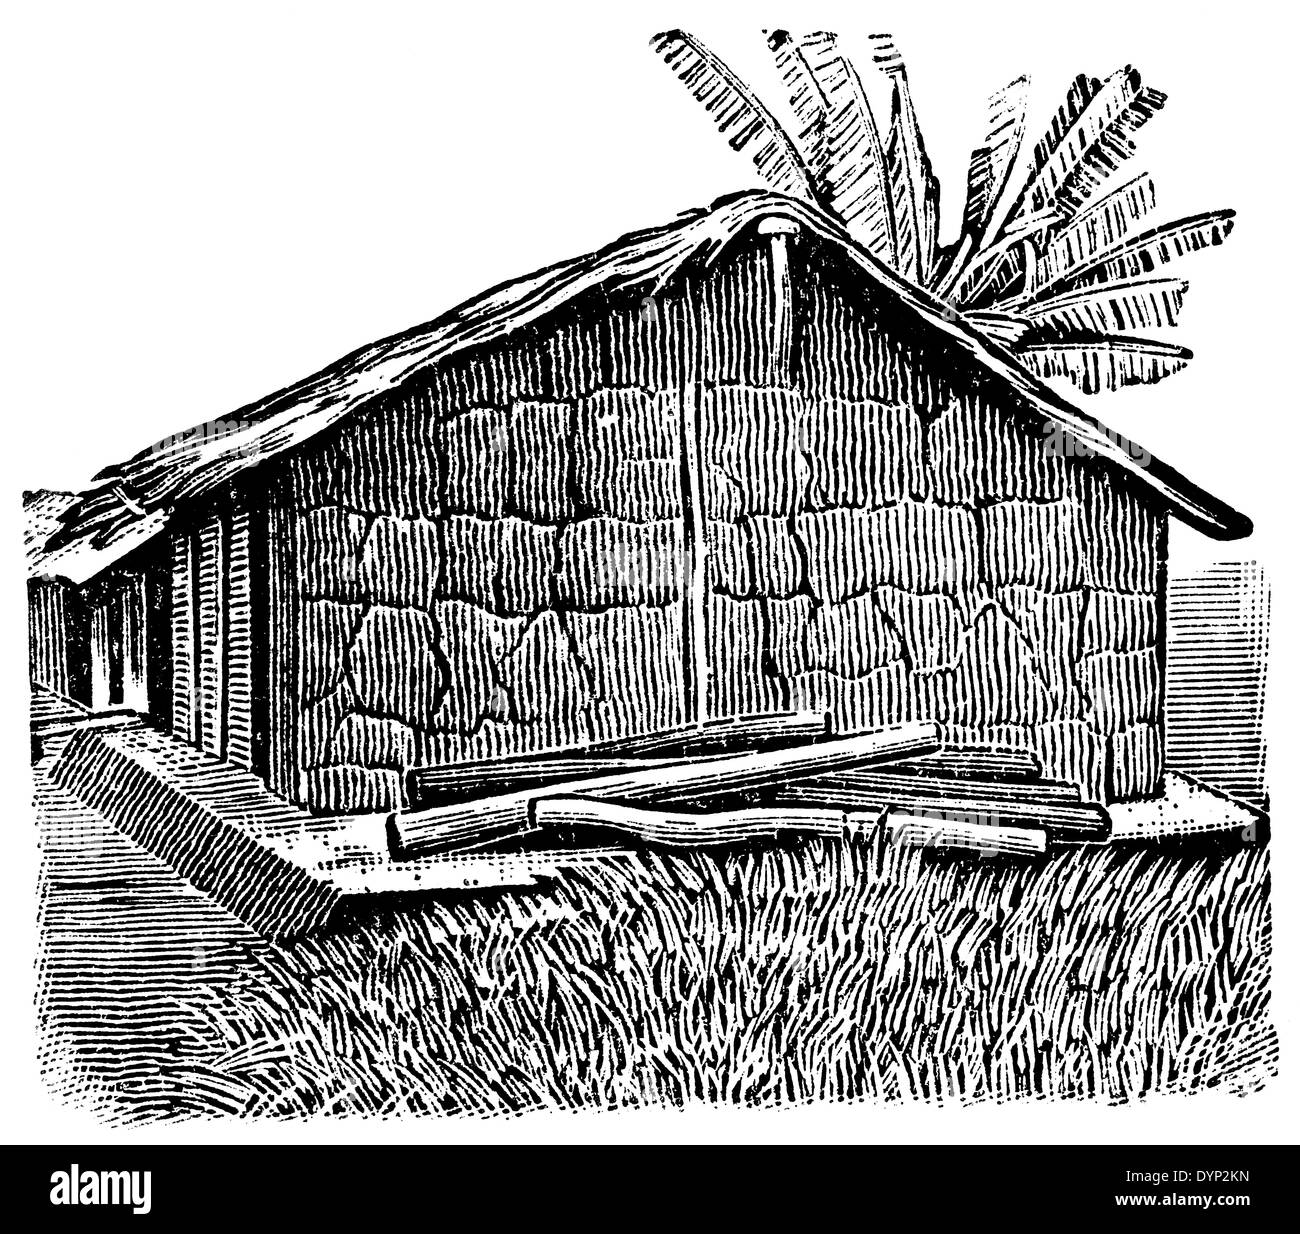 Maison rurale traditionnelle de l'Afrique de l'Ouest, de l'illustration de l'Encyclopédie Soviétique, 1926 Banque D'Images